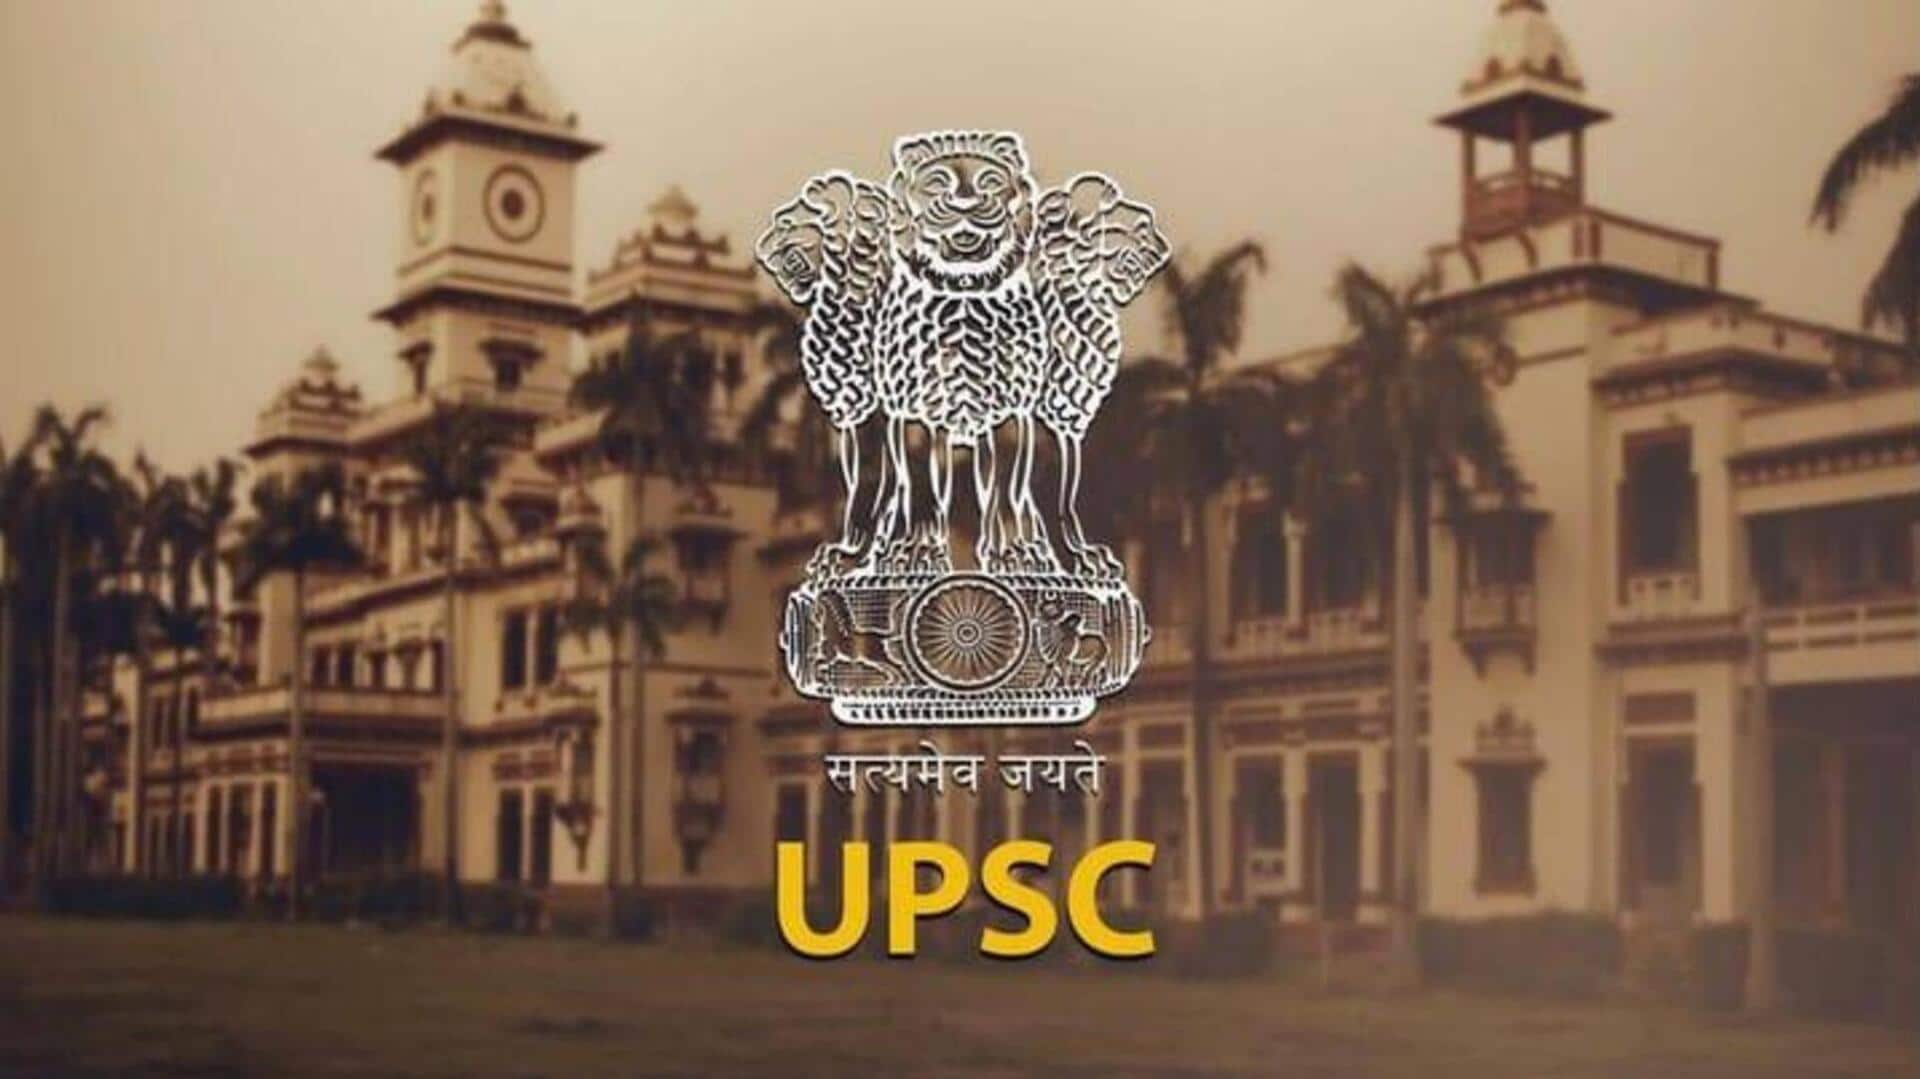 UPSC ने परीक्षाओं में गड़बड़ी रोकने के लिए बनाई विशेष योजना, जानिए क्या-क्या होंगे सुधार